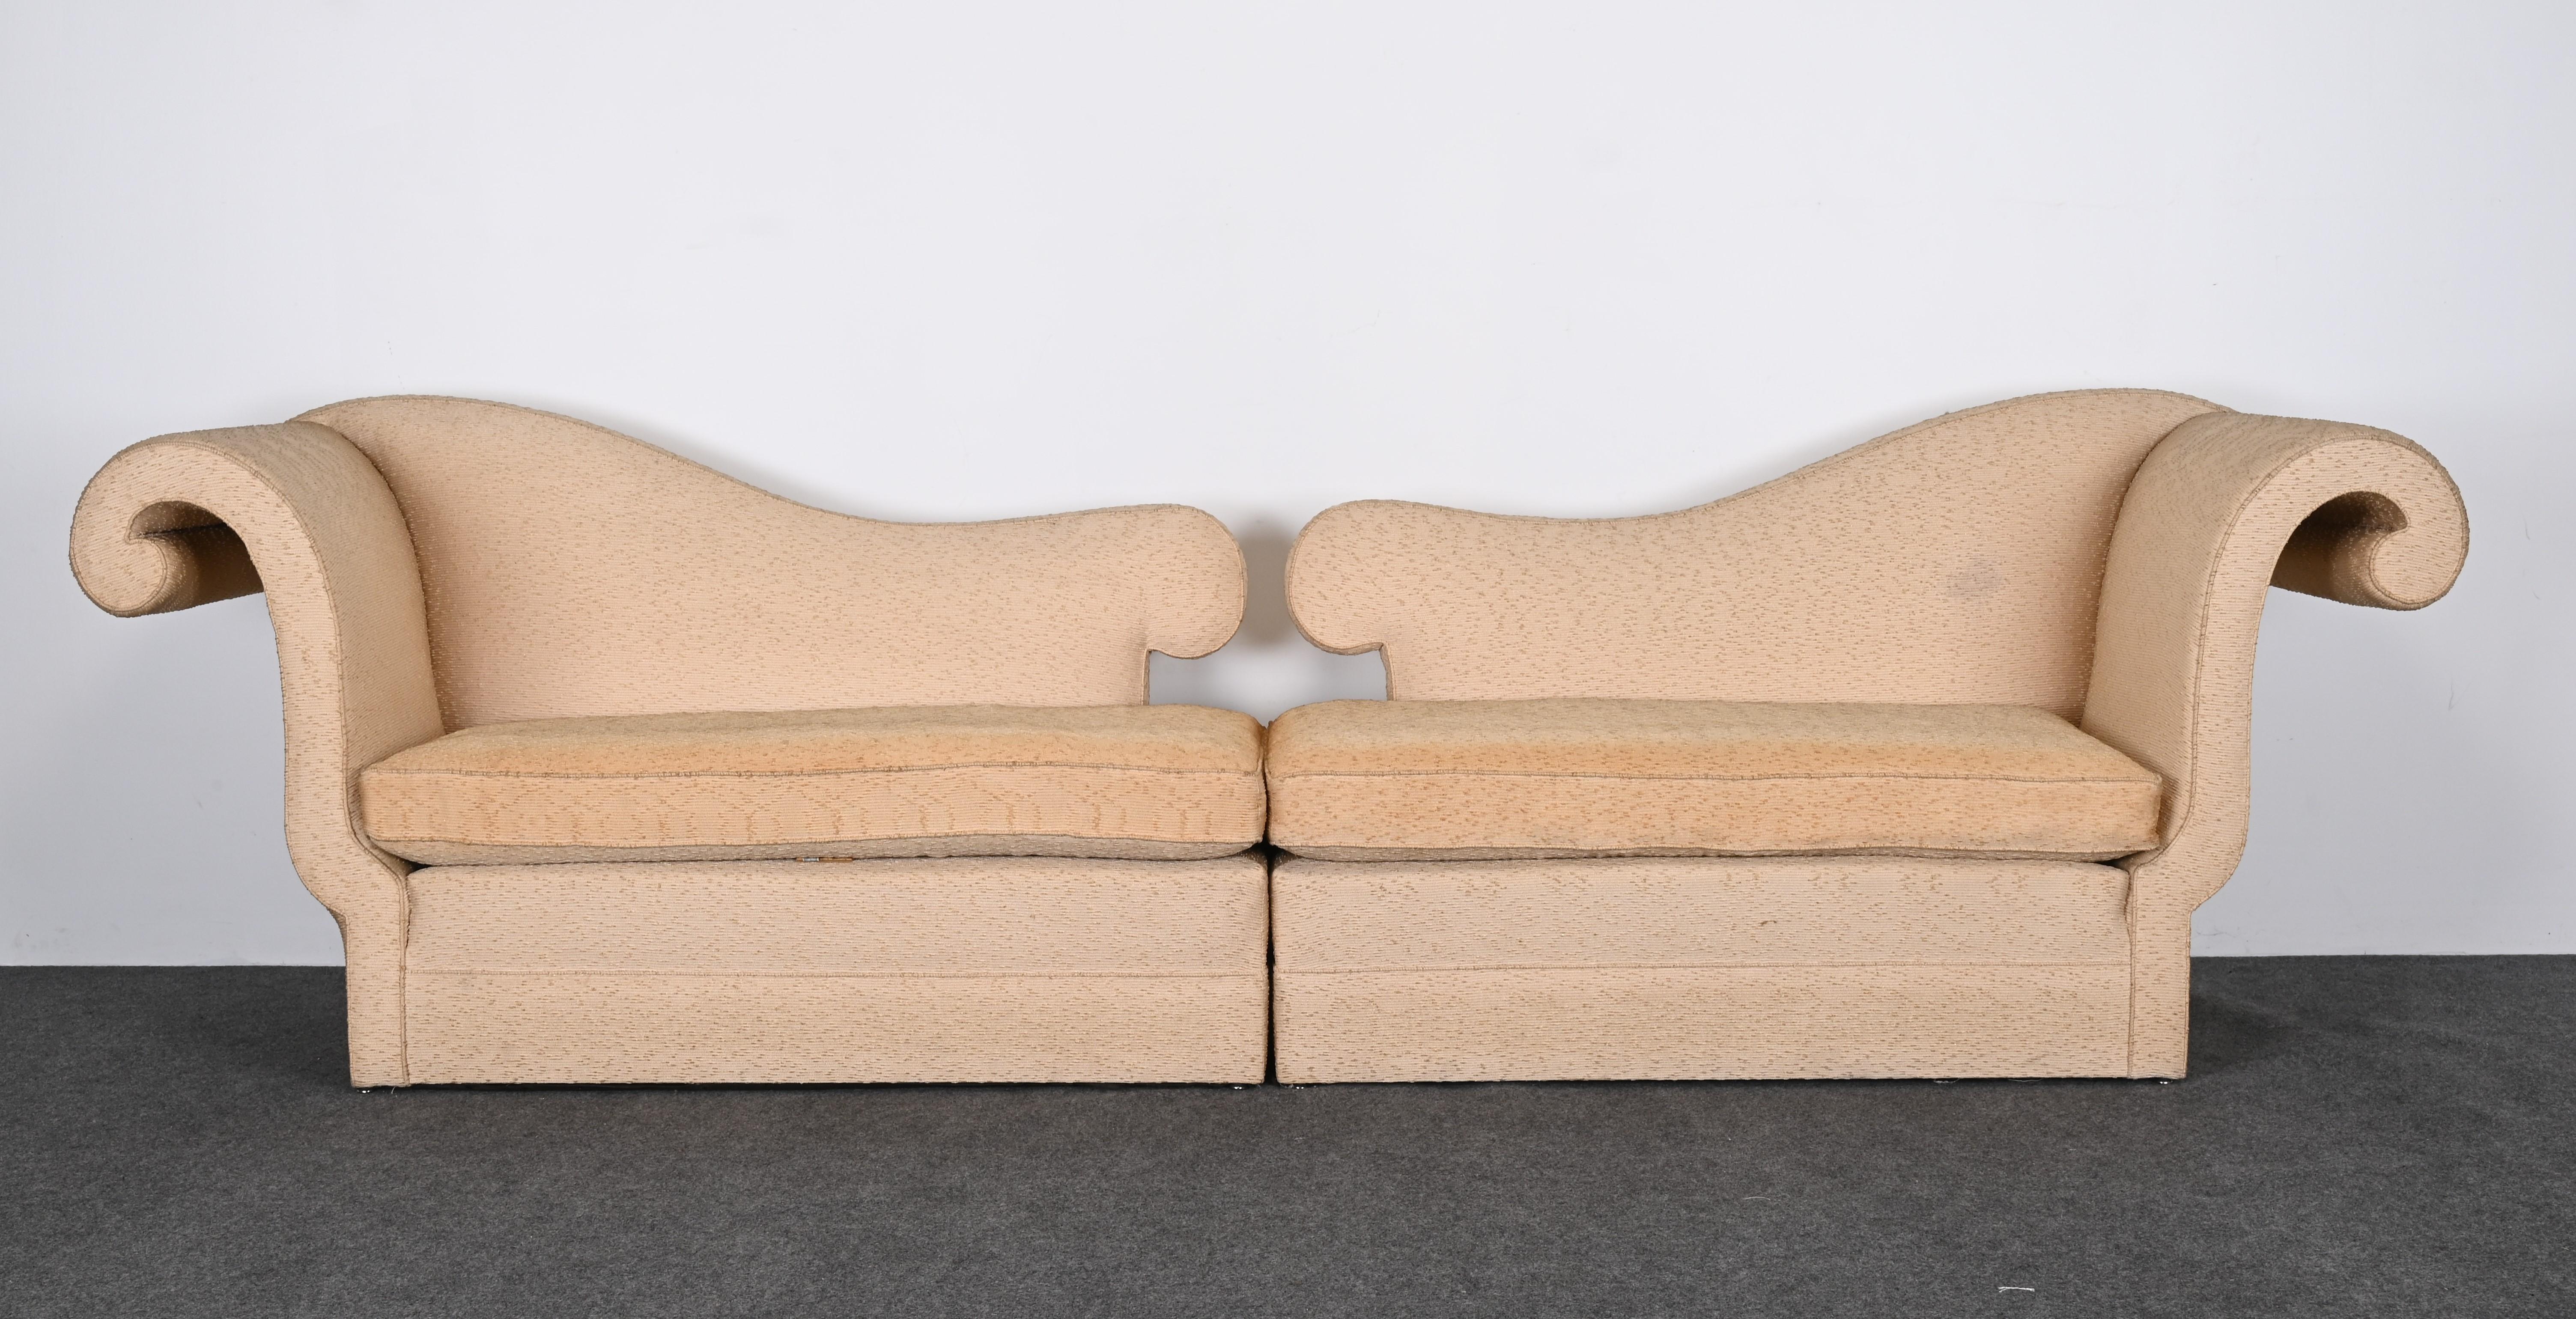 Ein zweiteiliges Designersofa mit gegenläufigen, geschwungenen Armlehnen im Hollywood-Regency-Stil. Dieses außergewöhnliche Sofa erinnert an die Entwürfe von Dorothy Draper aus den 1940er Jahren. Der Rahmen ist solide und strukturell gesund. Die